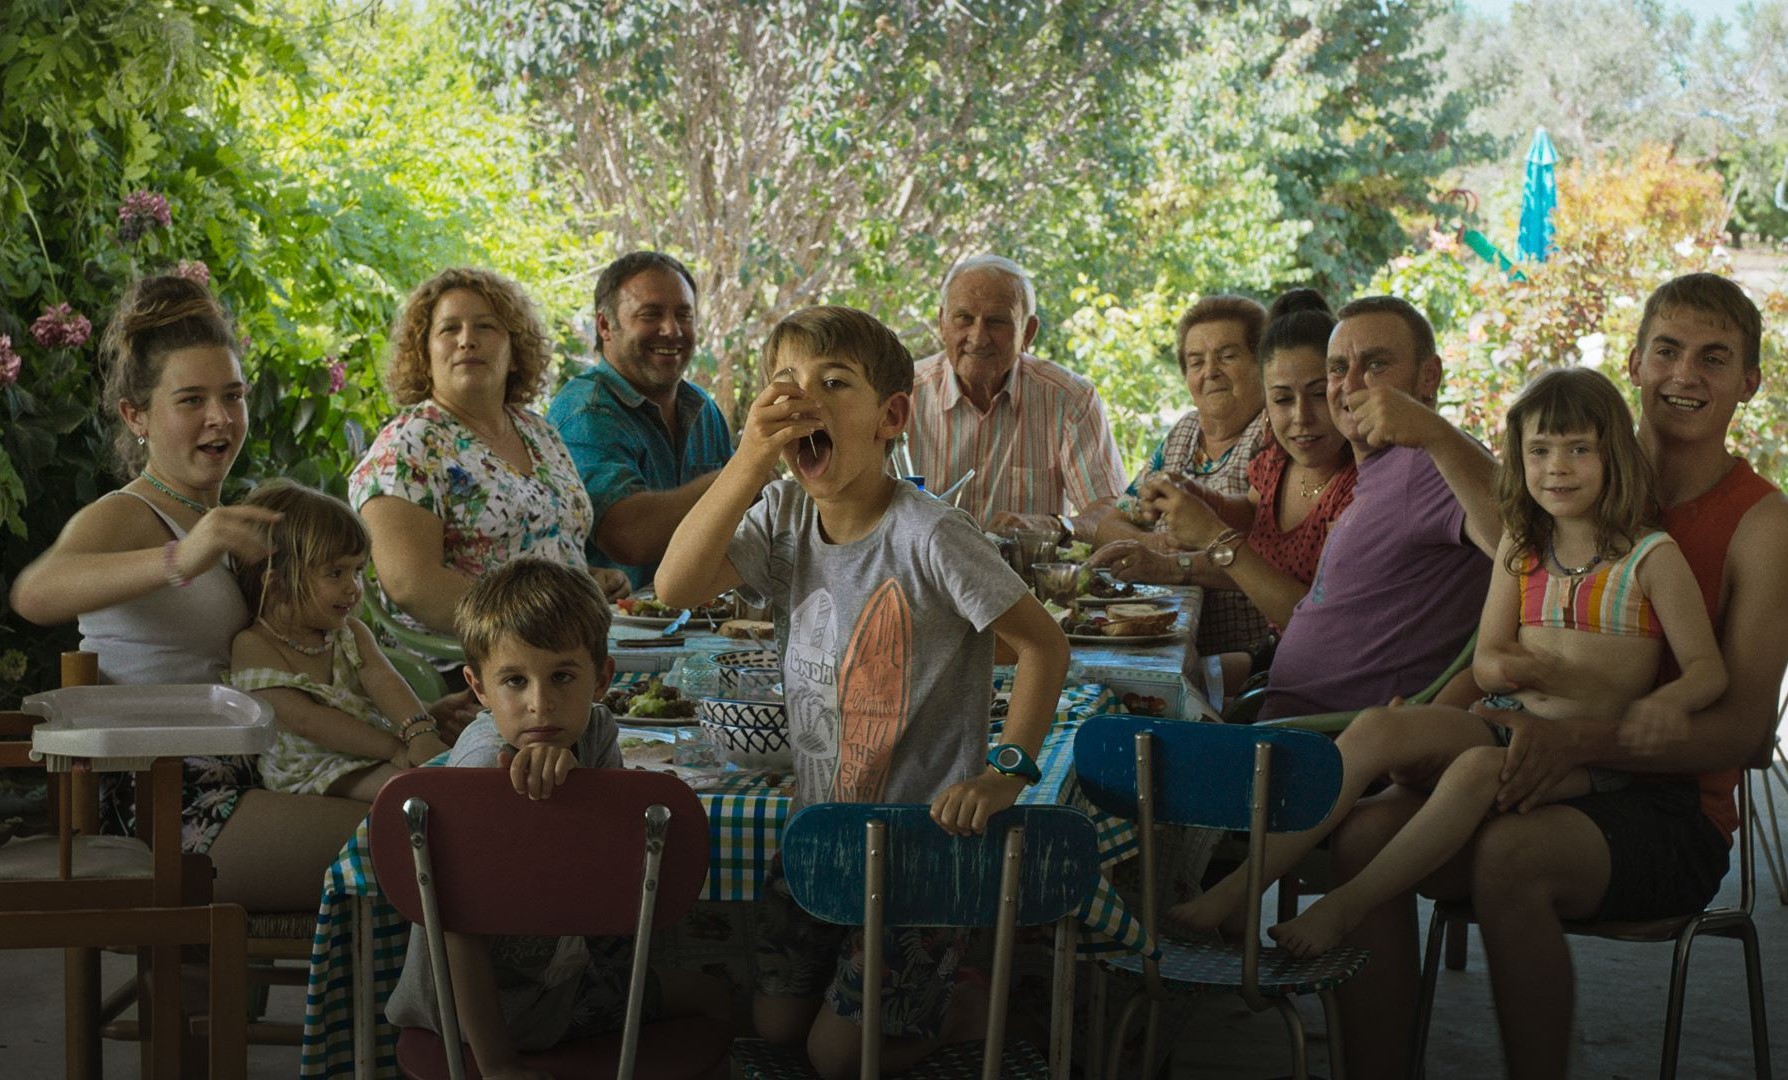 Imagem retangular que mostra uma cena do filme Algarràs. Uma família branca está reunida, sentada em uma mesa repleta de comidas. Eles estão virados para a direção da foto. Todos sorriem, se movimentam ou conversam uns com os outros.